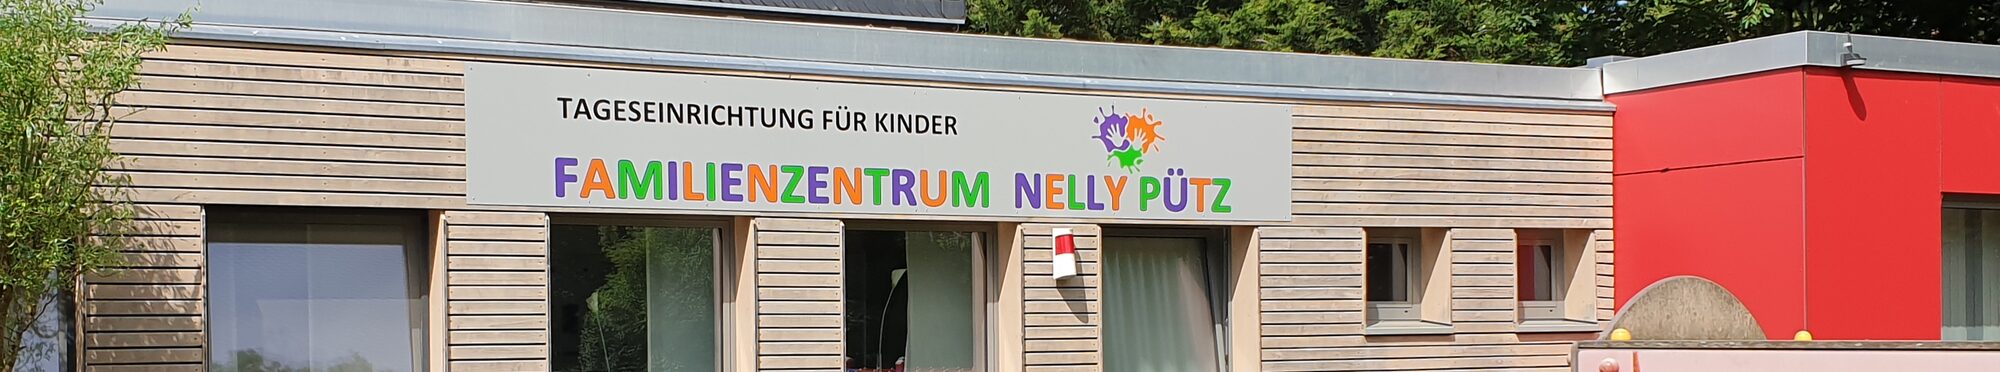 Namensschild familienzentrum Nelly Pütz